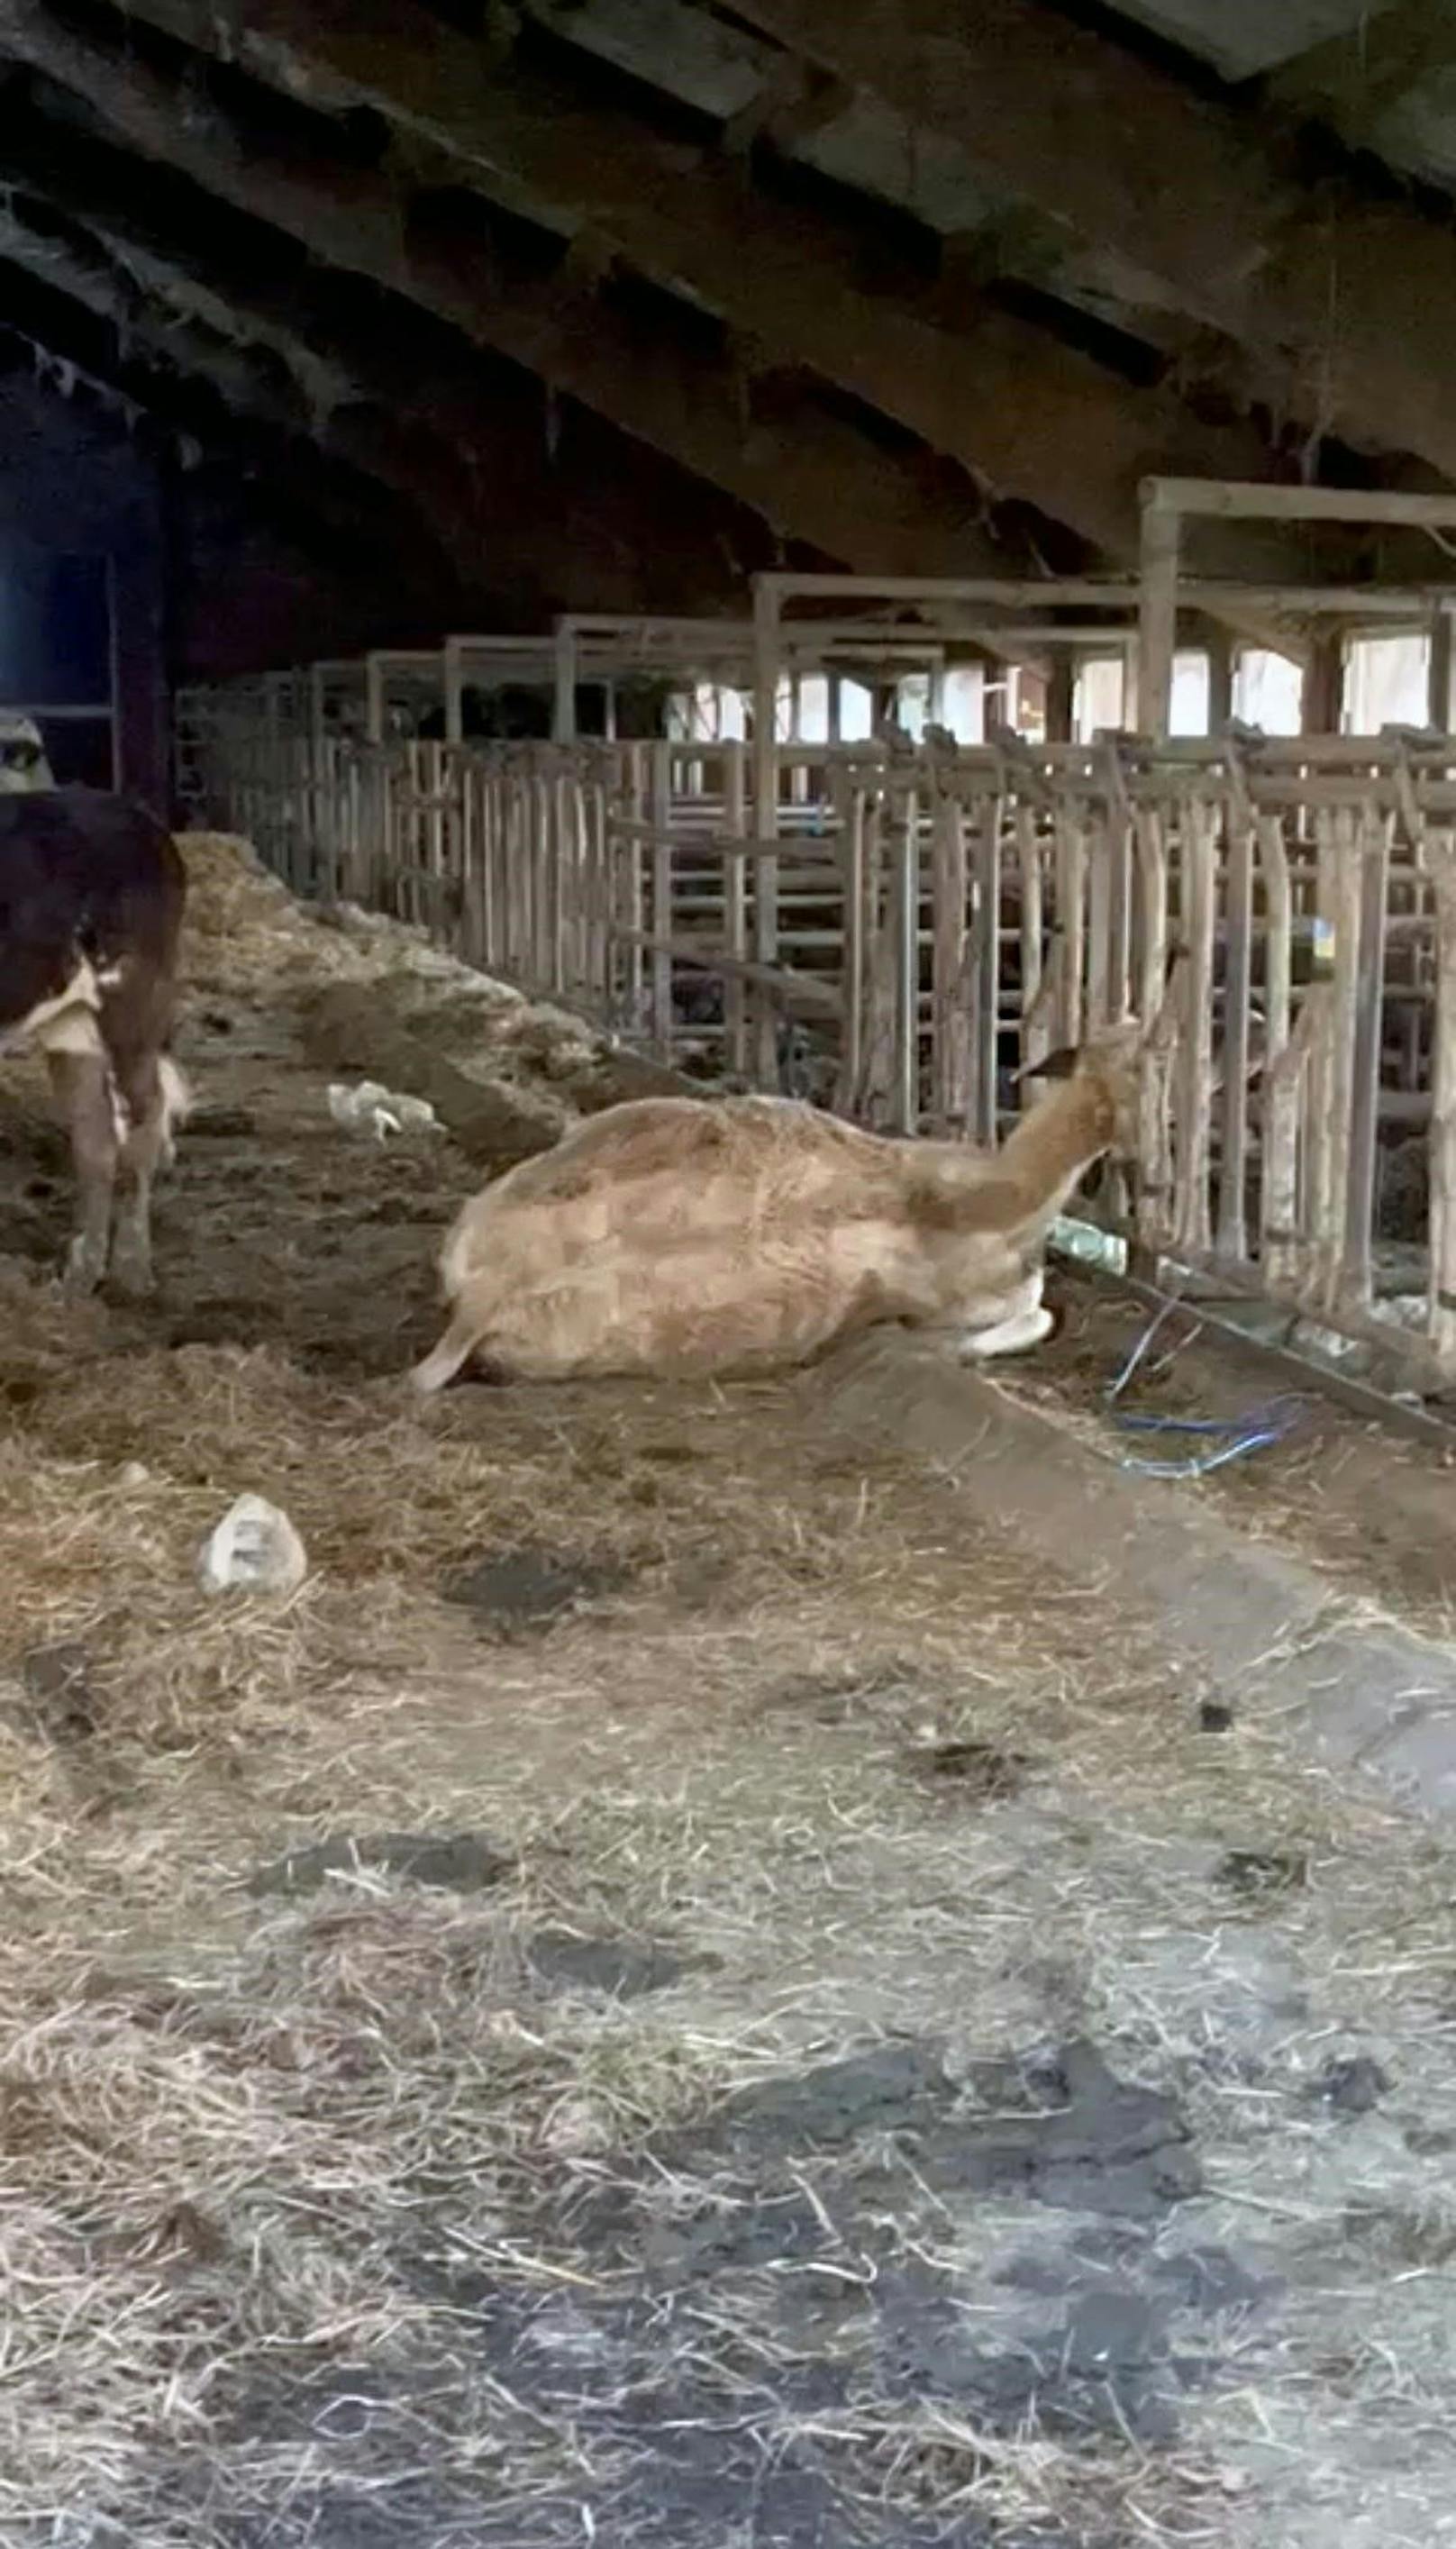 Die Videoaufnahme einer Anrainerin zeigt ein totes Rind, das mit dem Kopf und Hals zwischen den Metallstangen hängt. Es ist wahrscheinlich, dass dieses Tier steckenblieb und so starb.